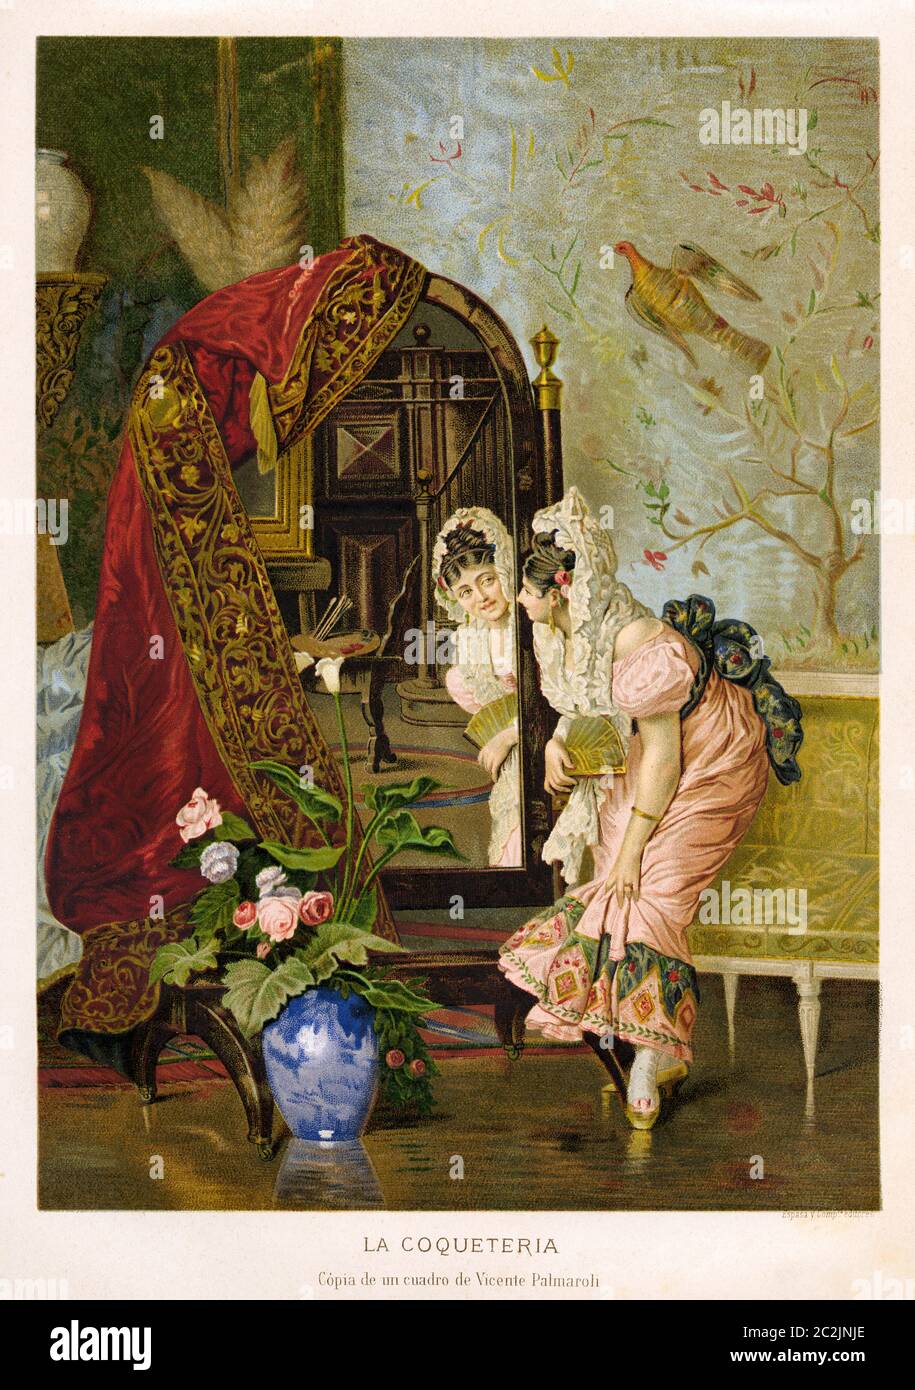 Gemälde einer kokettierten Frau aus dem 19. Jahrhundert, die in einen Spiegel schaut von Vicente Palmaroli (1834-1896) spanischer Maler der romantischen Zeit, die sich zu dem costumbrista-Gemälde entwickelte. Alte Illustration aus dem 19. Jahrhundert, El Mundo Ilustrado 1880 Stockfoto